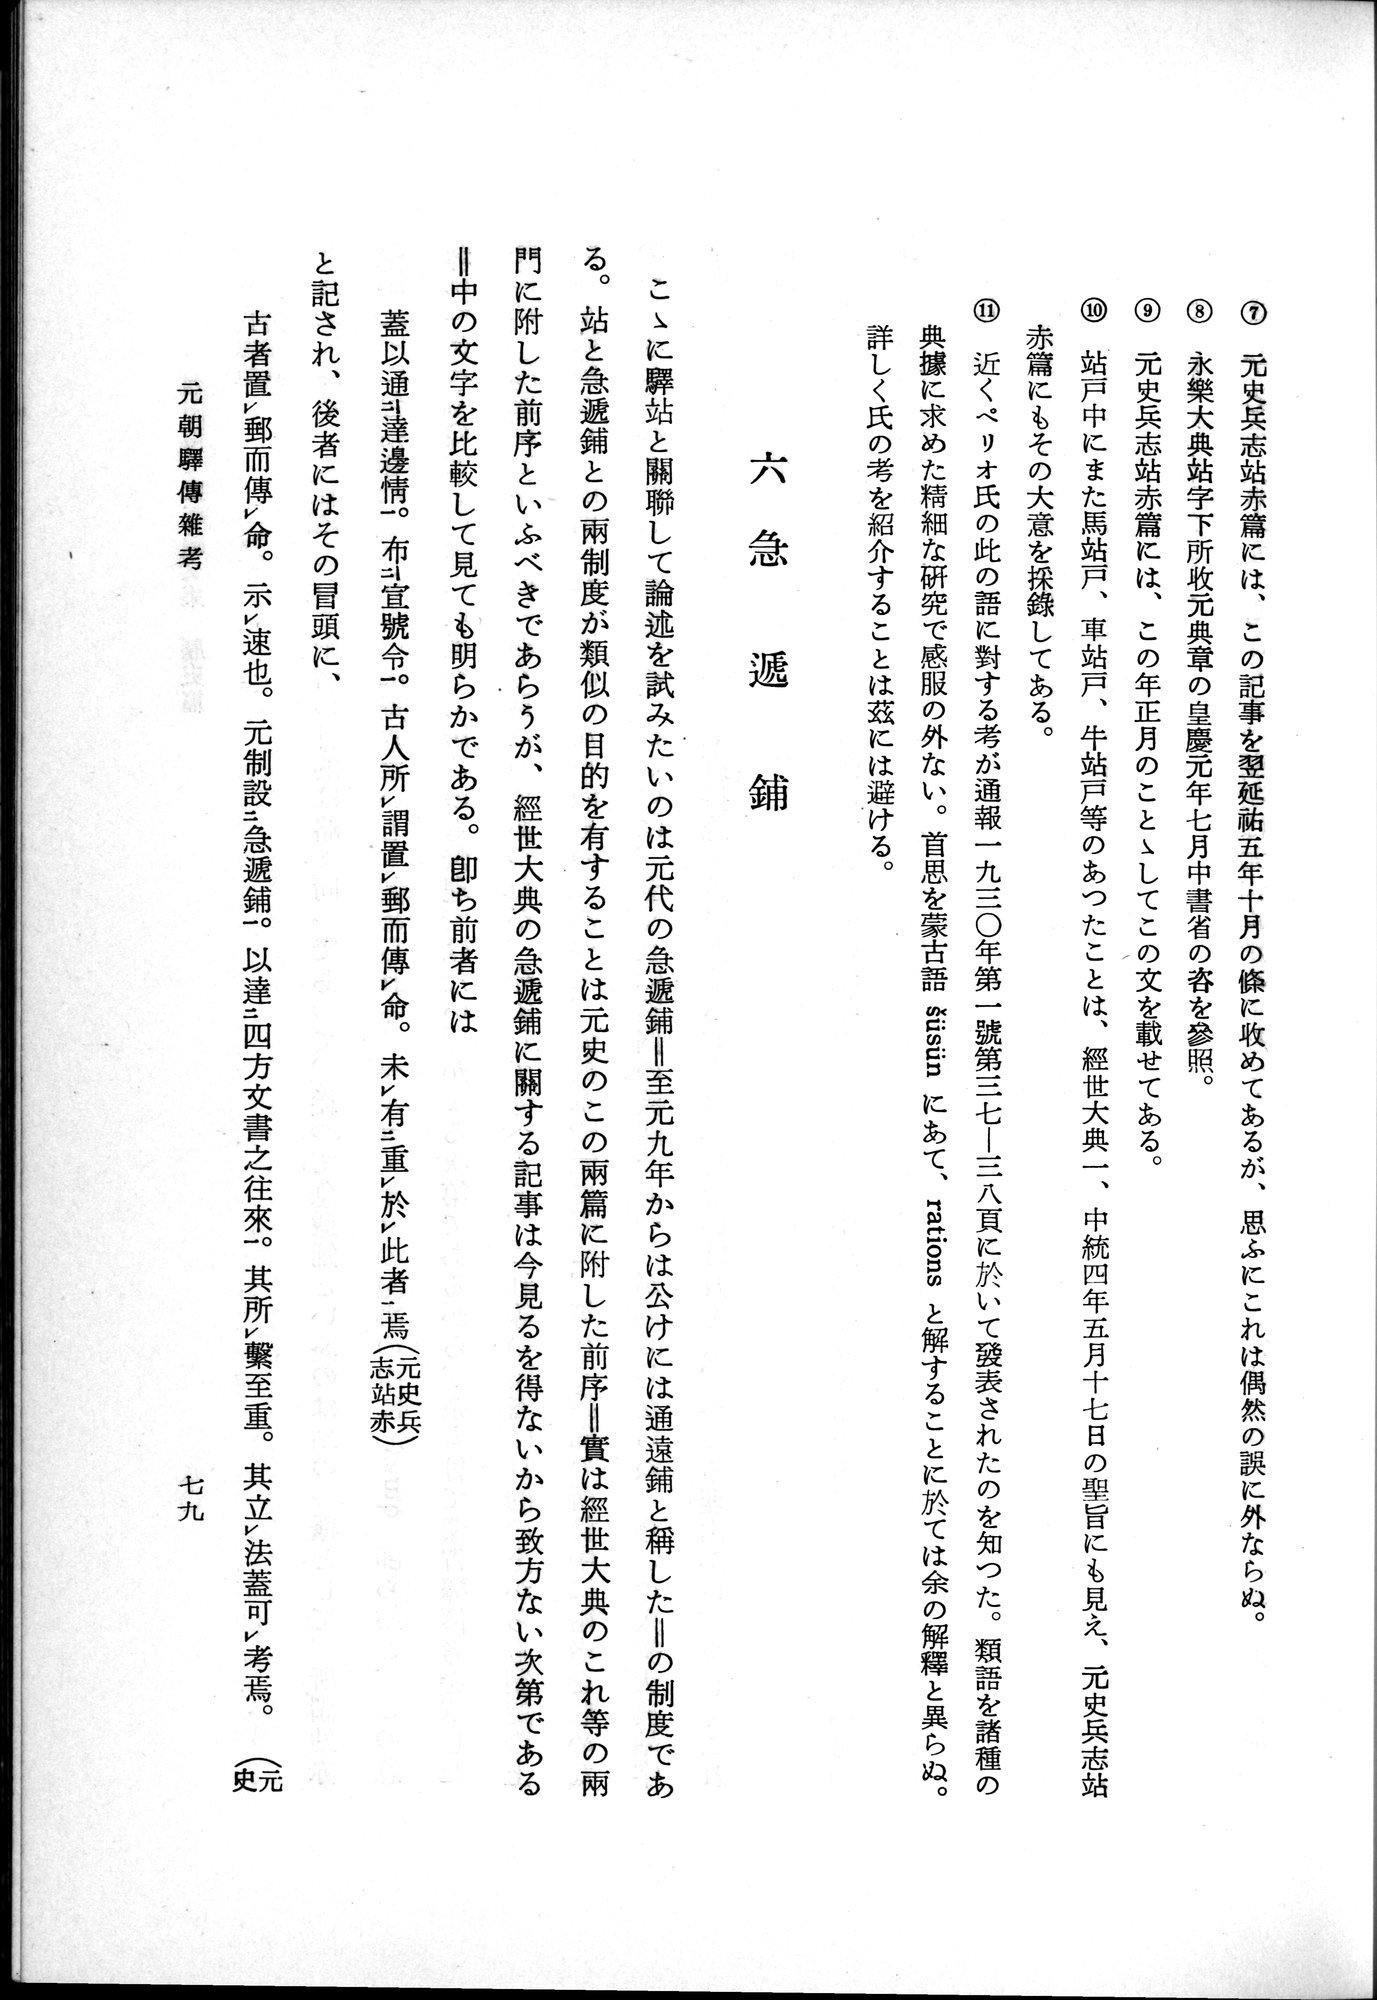 羽田博士史学論文集 : vol.1 / Page 117 (Grayscale High Resolution Image)